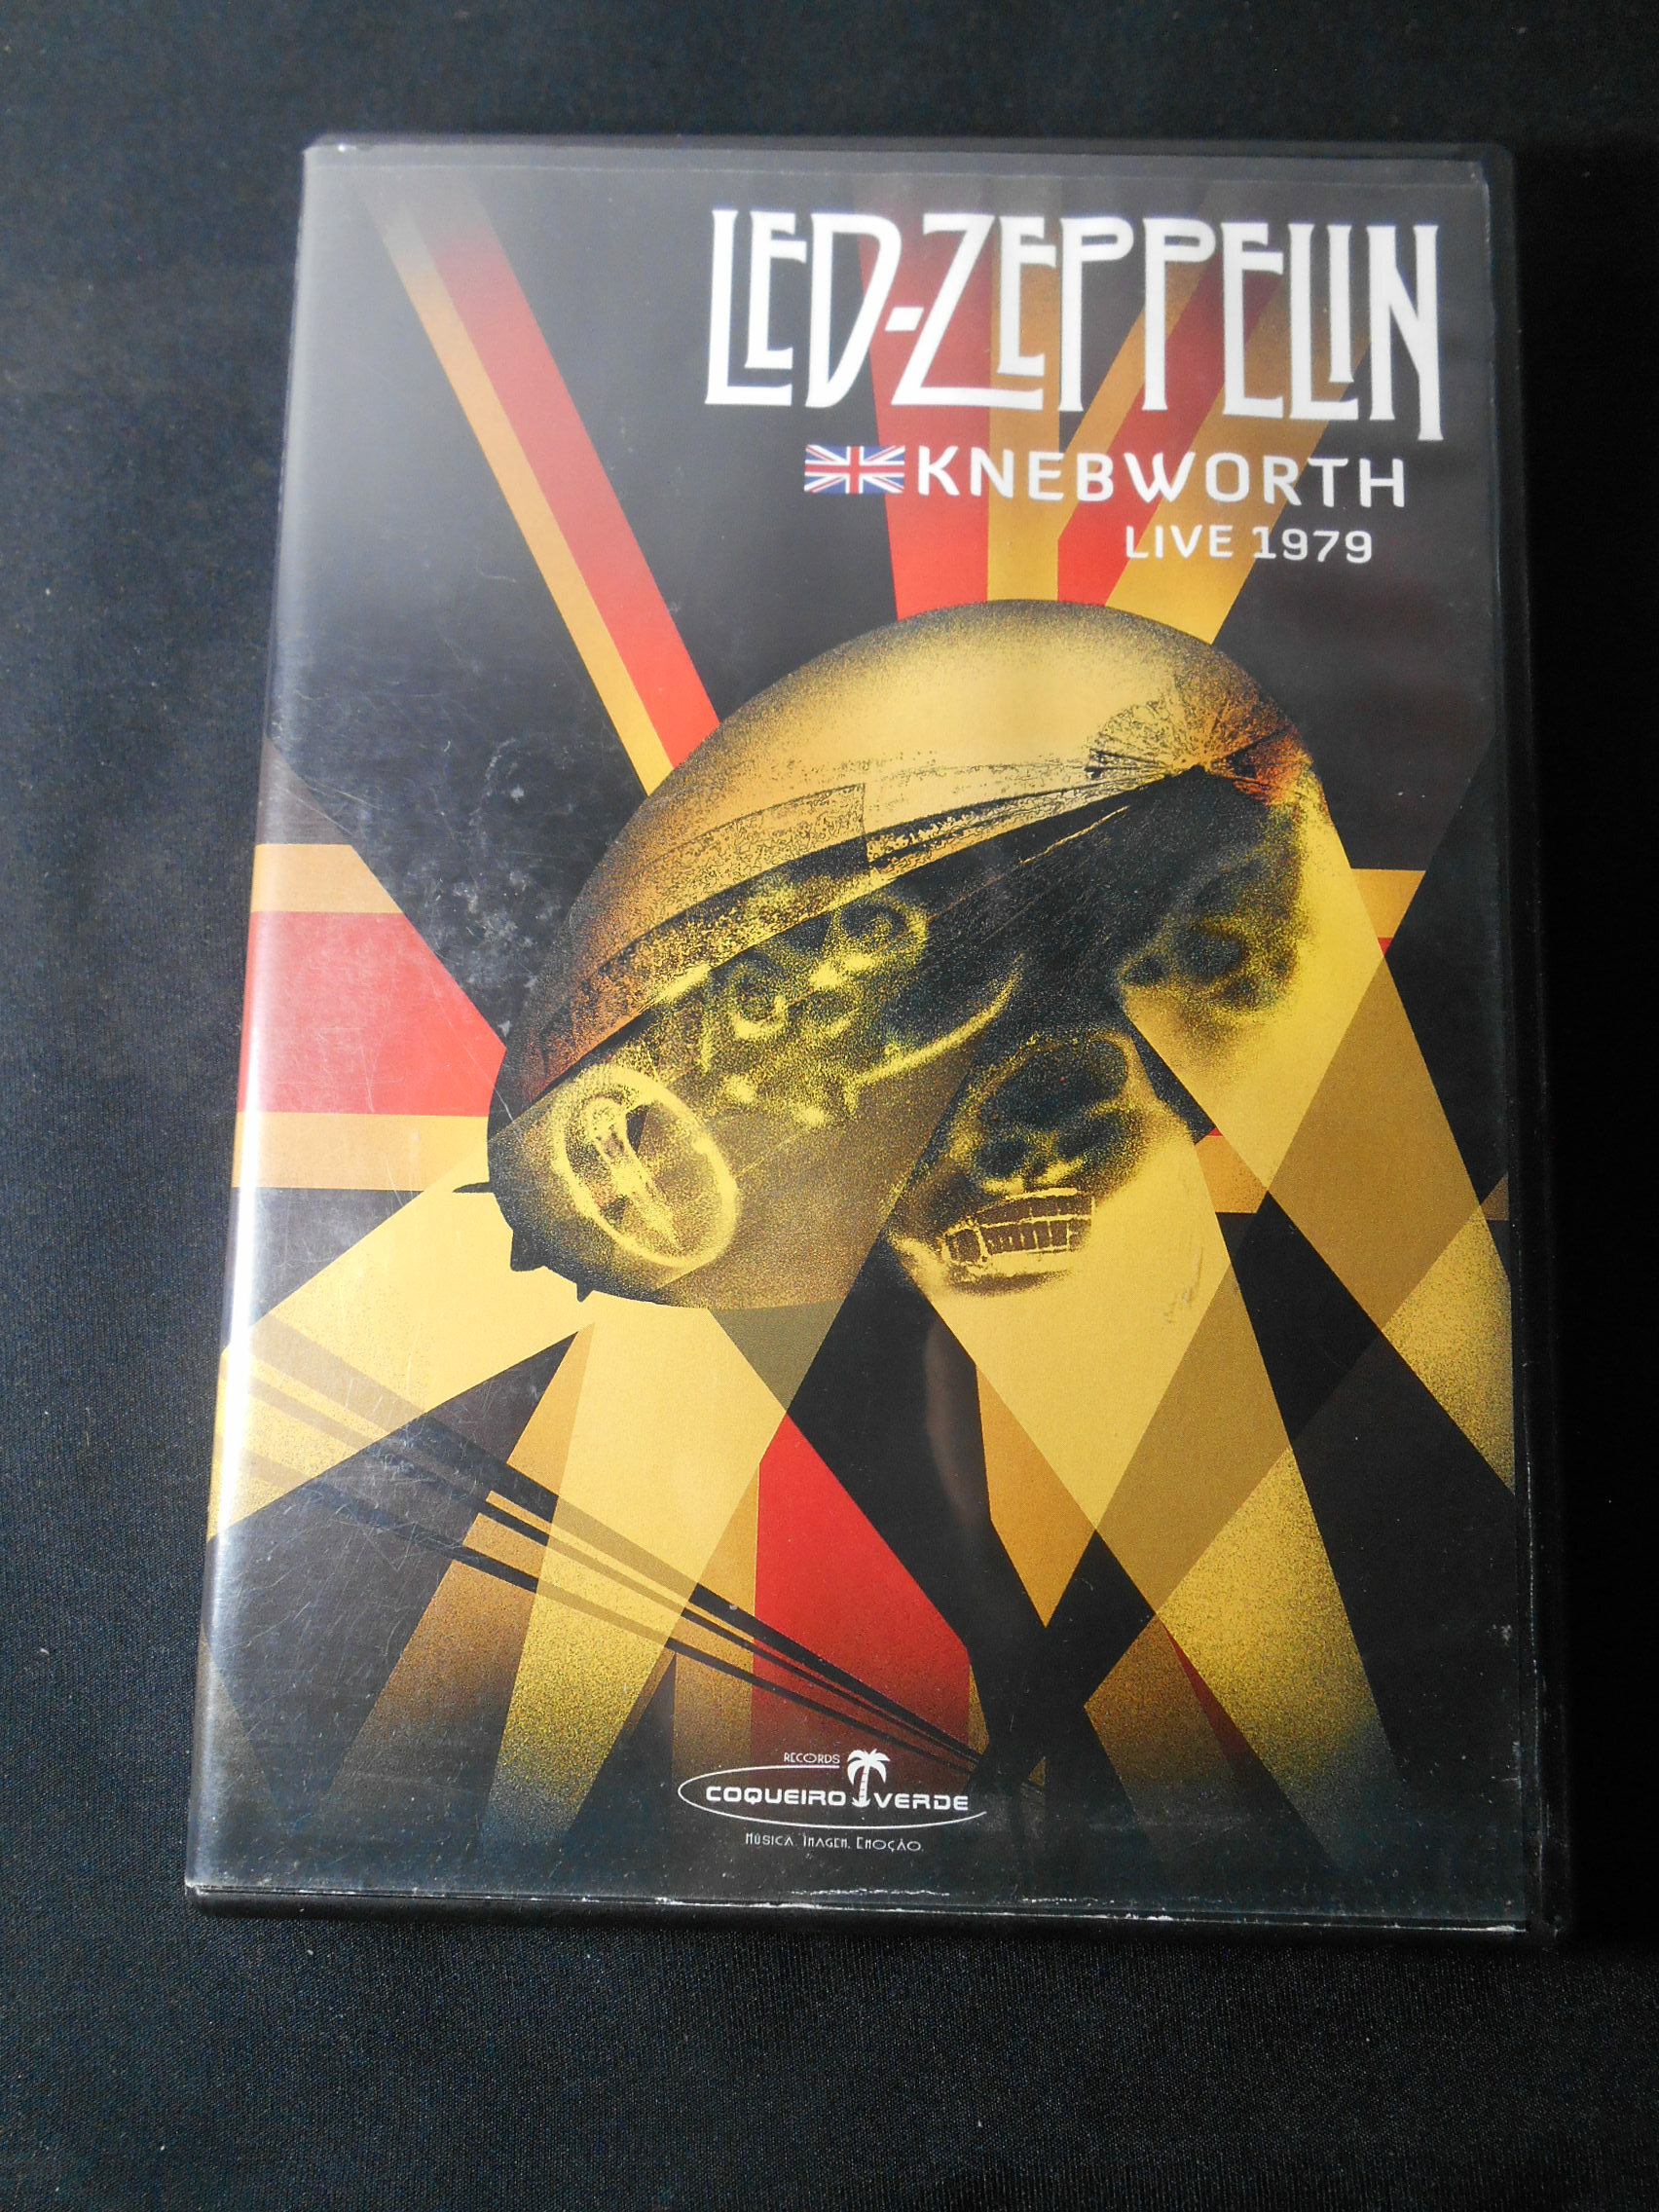 DVD - Led Zeppelin - Knebworth Live 1979